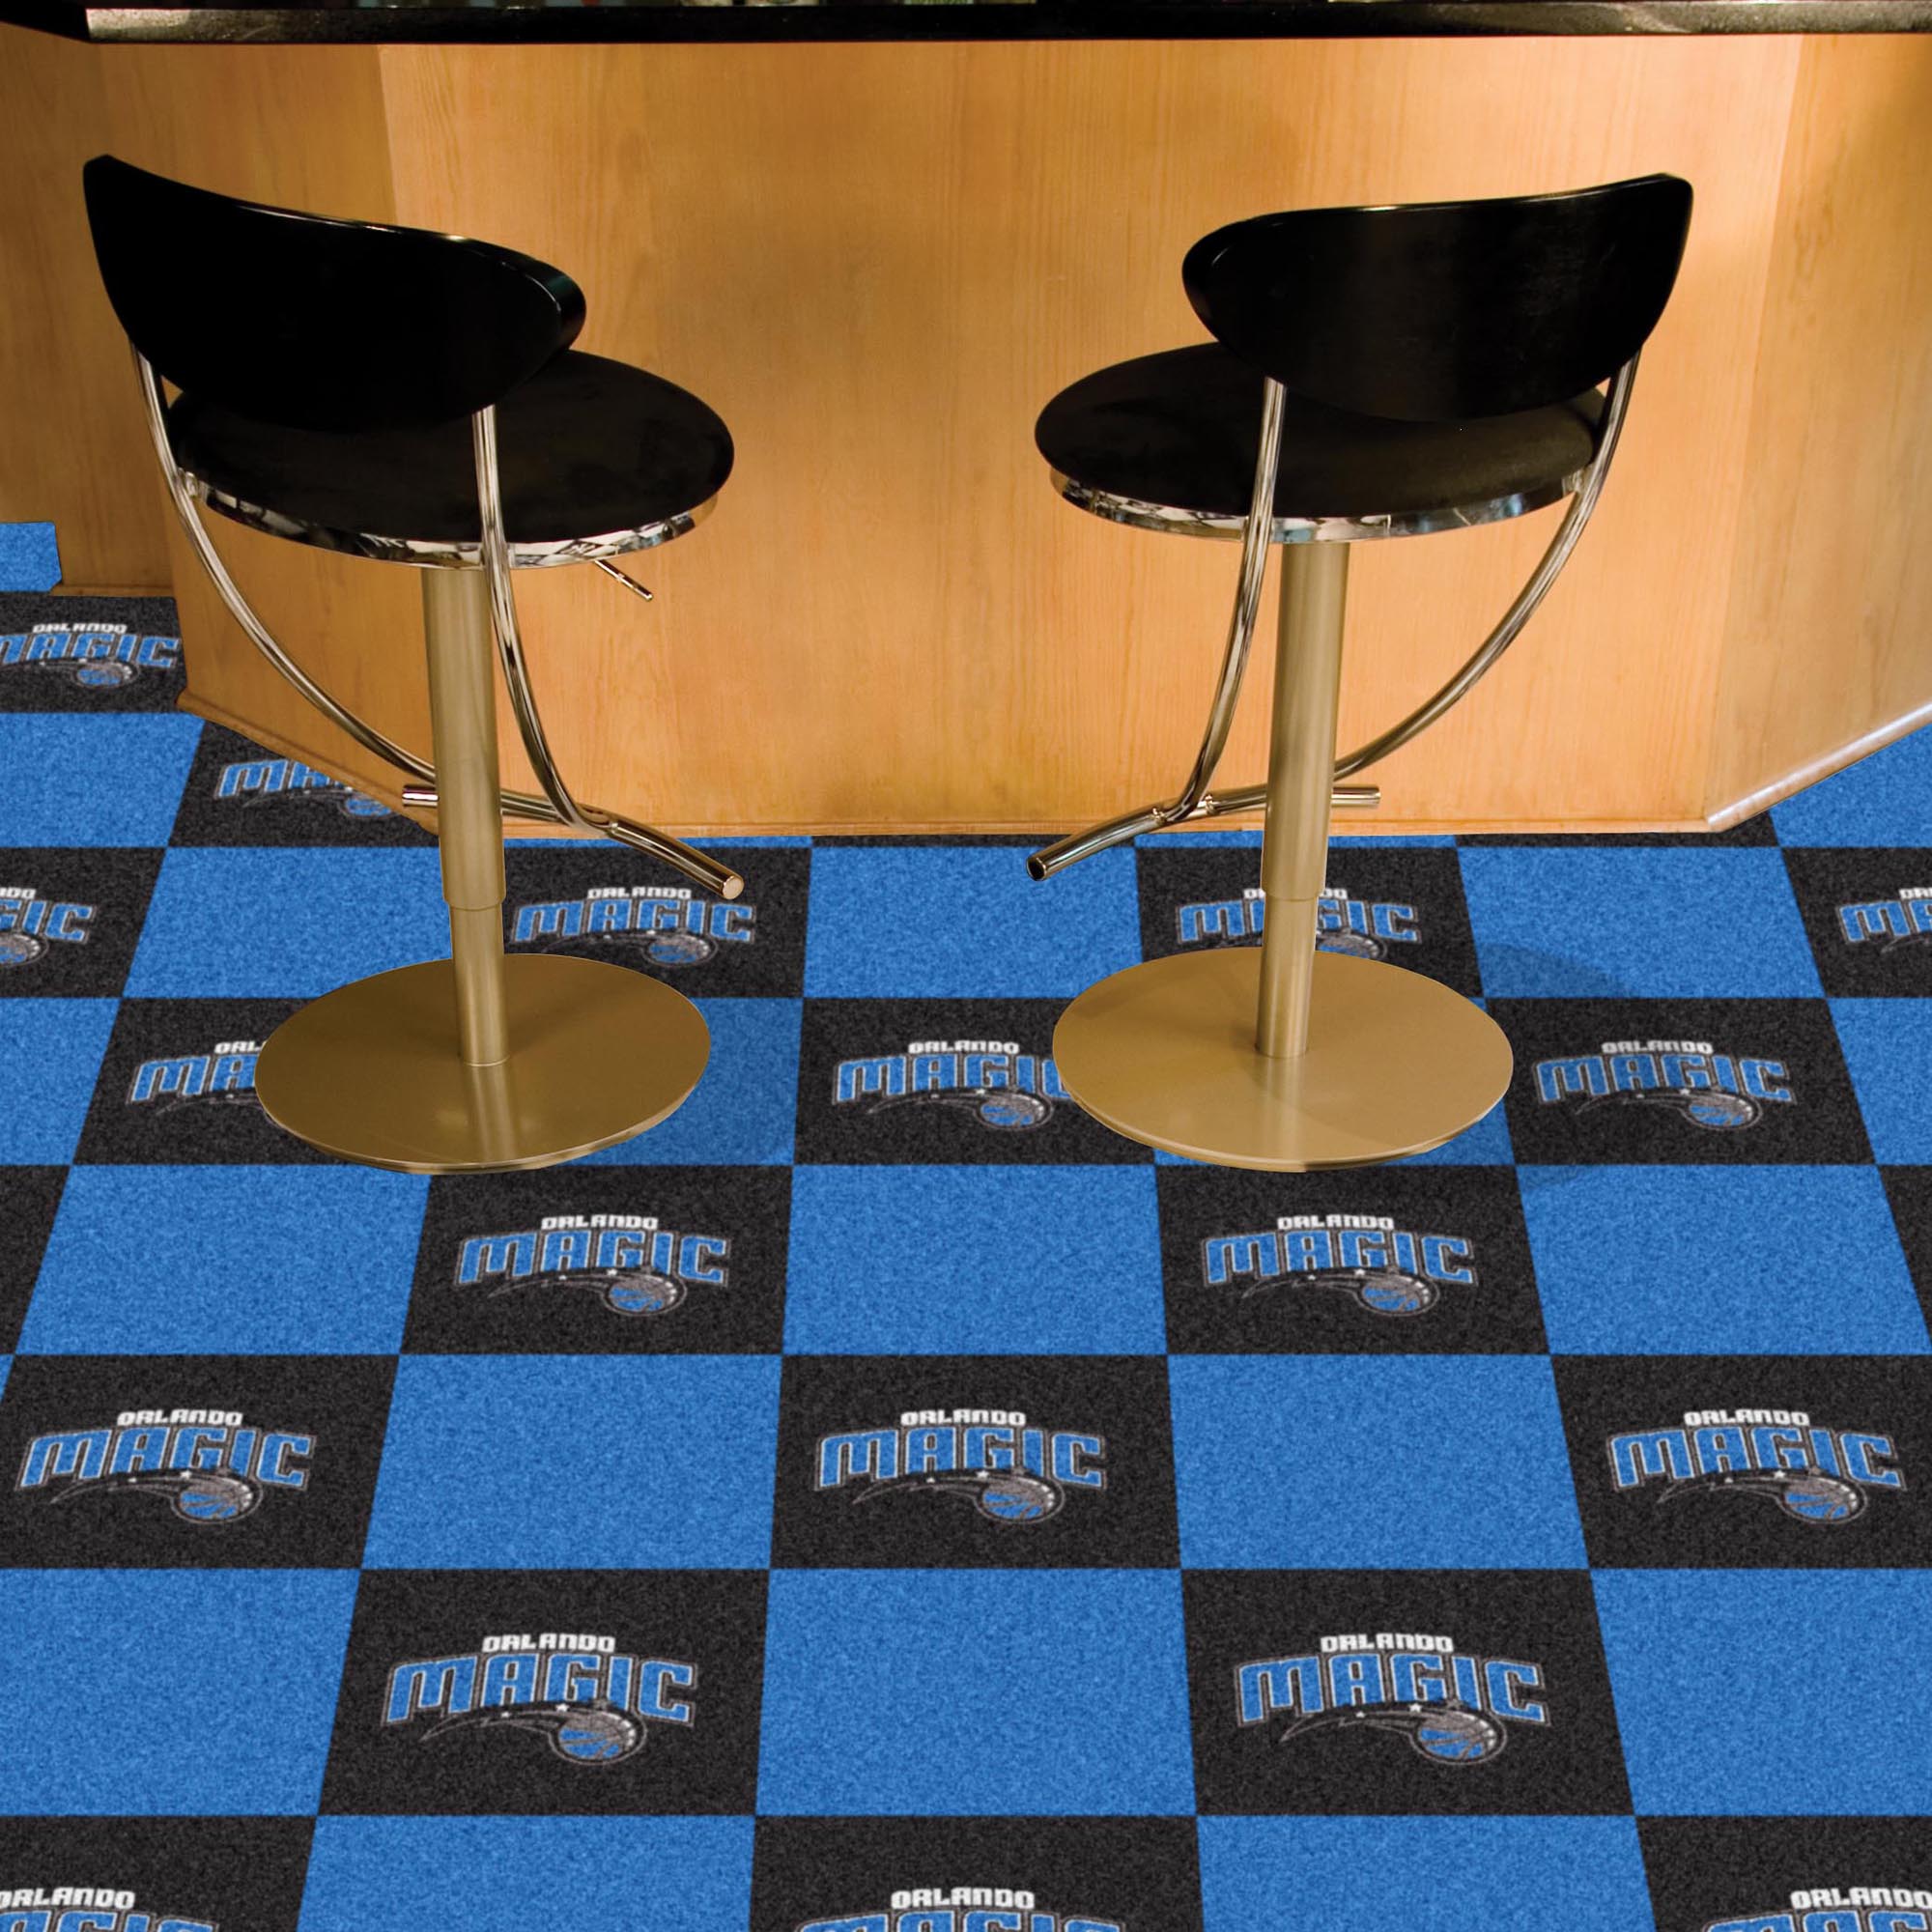 Magic Team Carpet Tiles - 45 sq ft